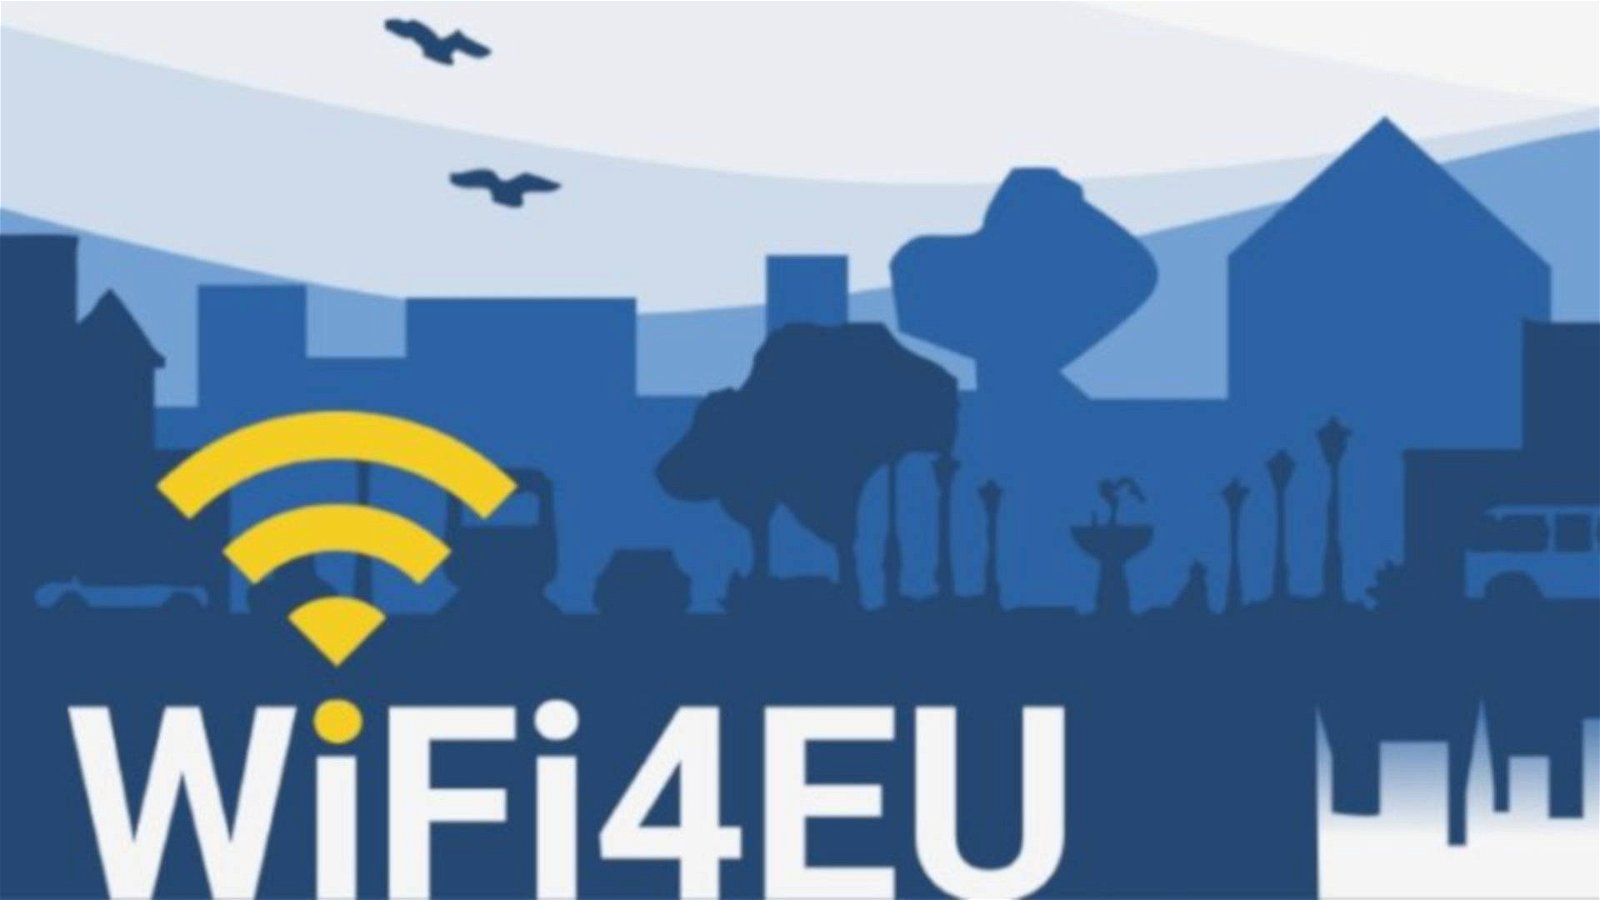 Immagine di WiFi4Eu, al via la call da 27 mln di euro per portare il WiFi nei piccoli comuni